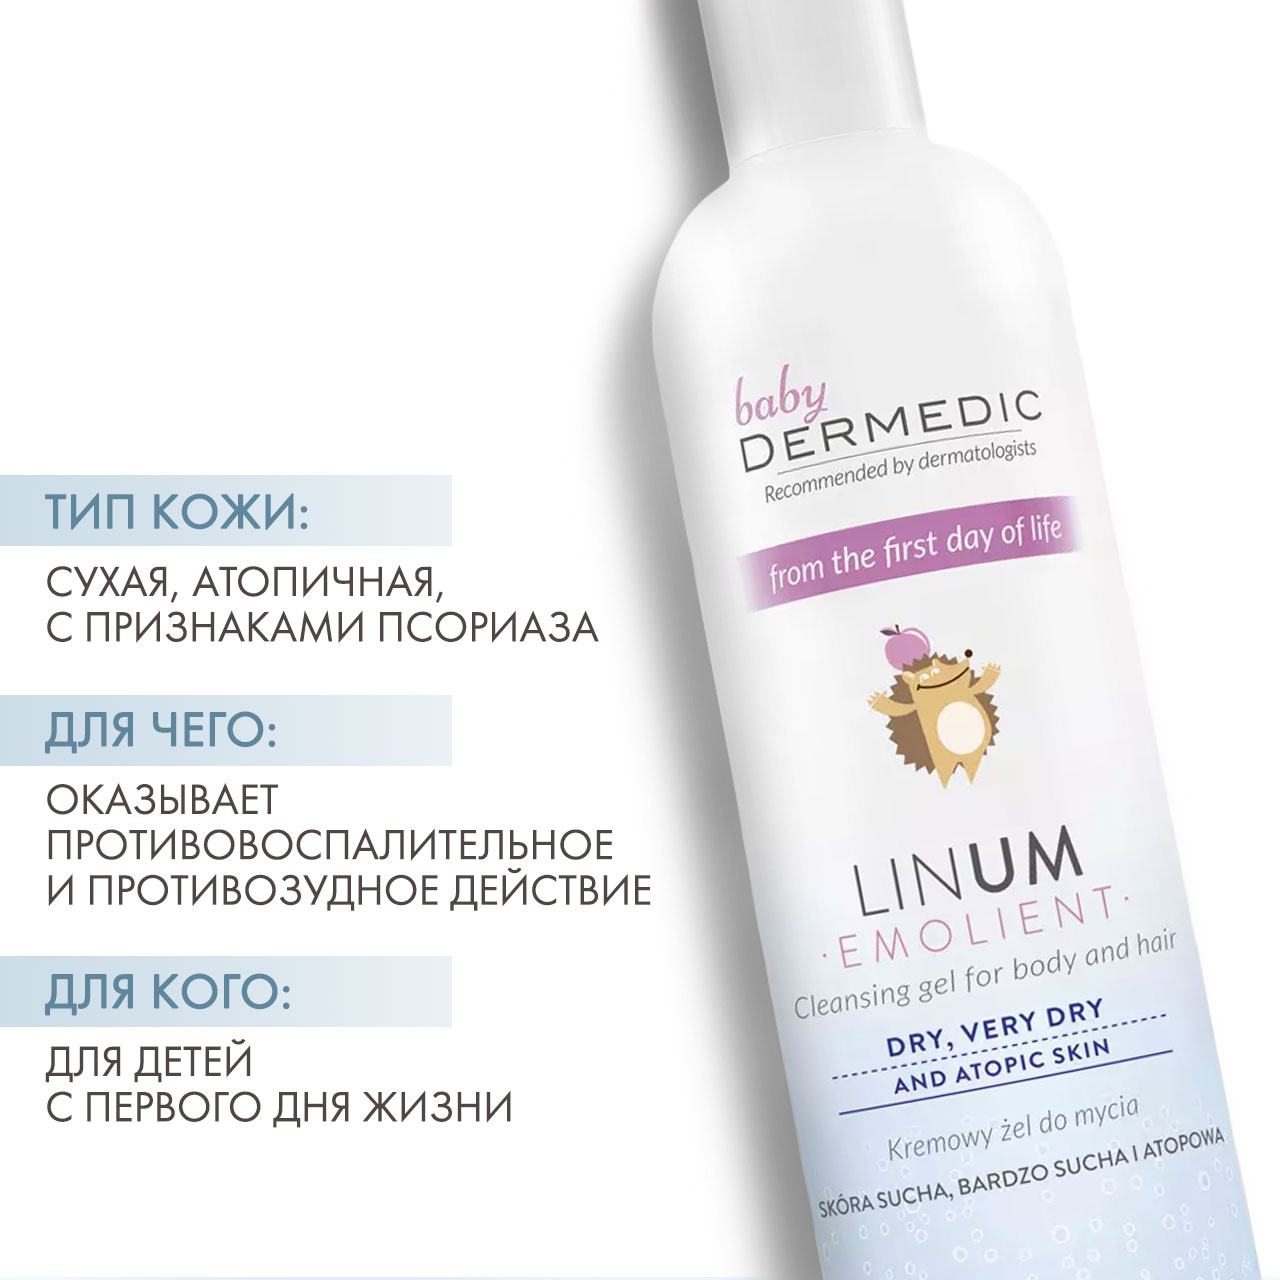 Dermedic Очищающий крем-гель с 1 дня жизни Baby Atopy Prone Skin Cleansing gel for body and hair, 200 мл. фото